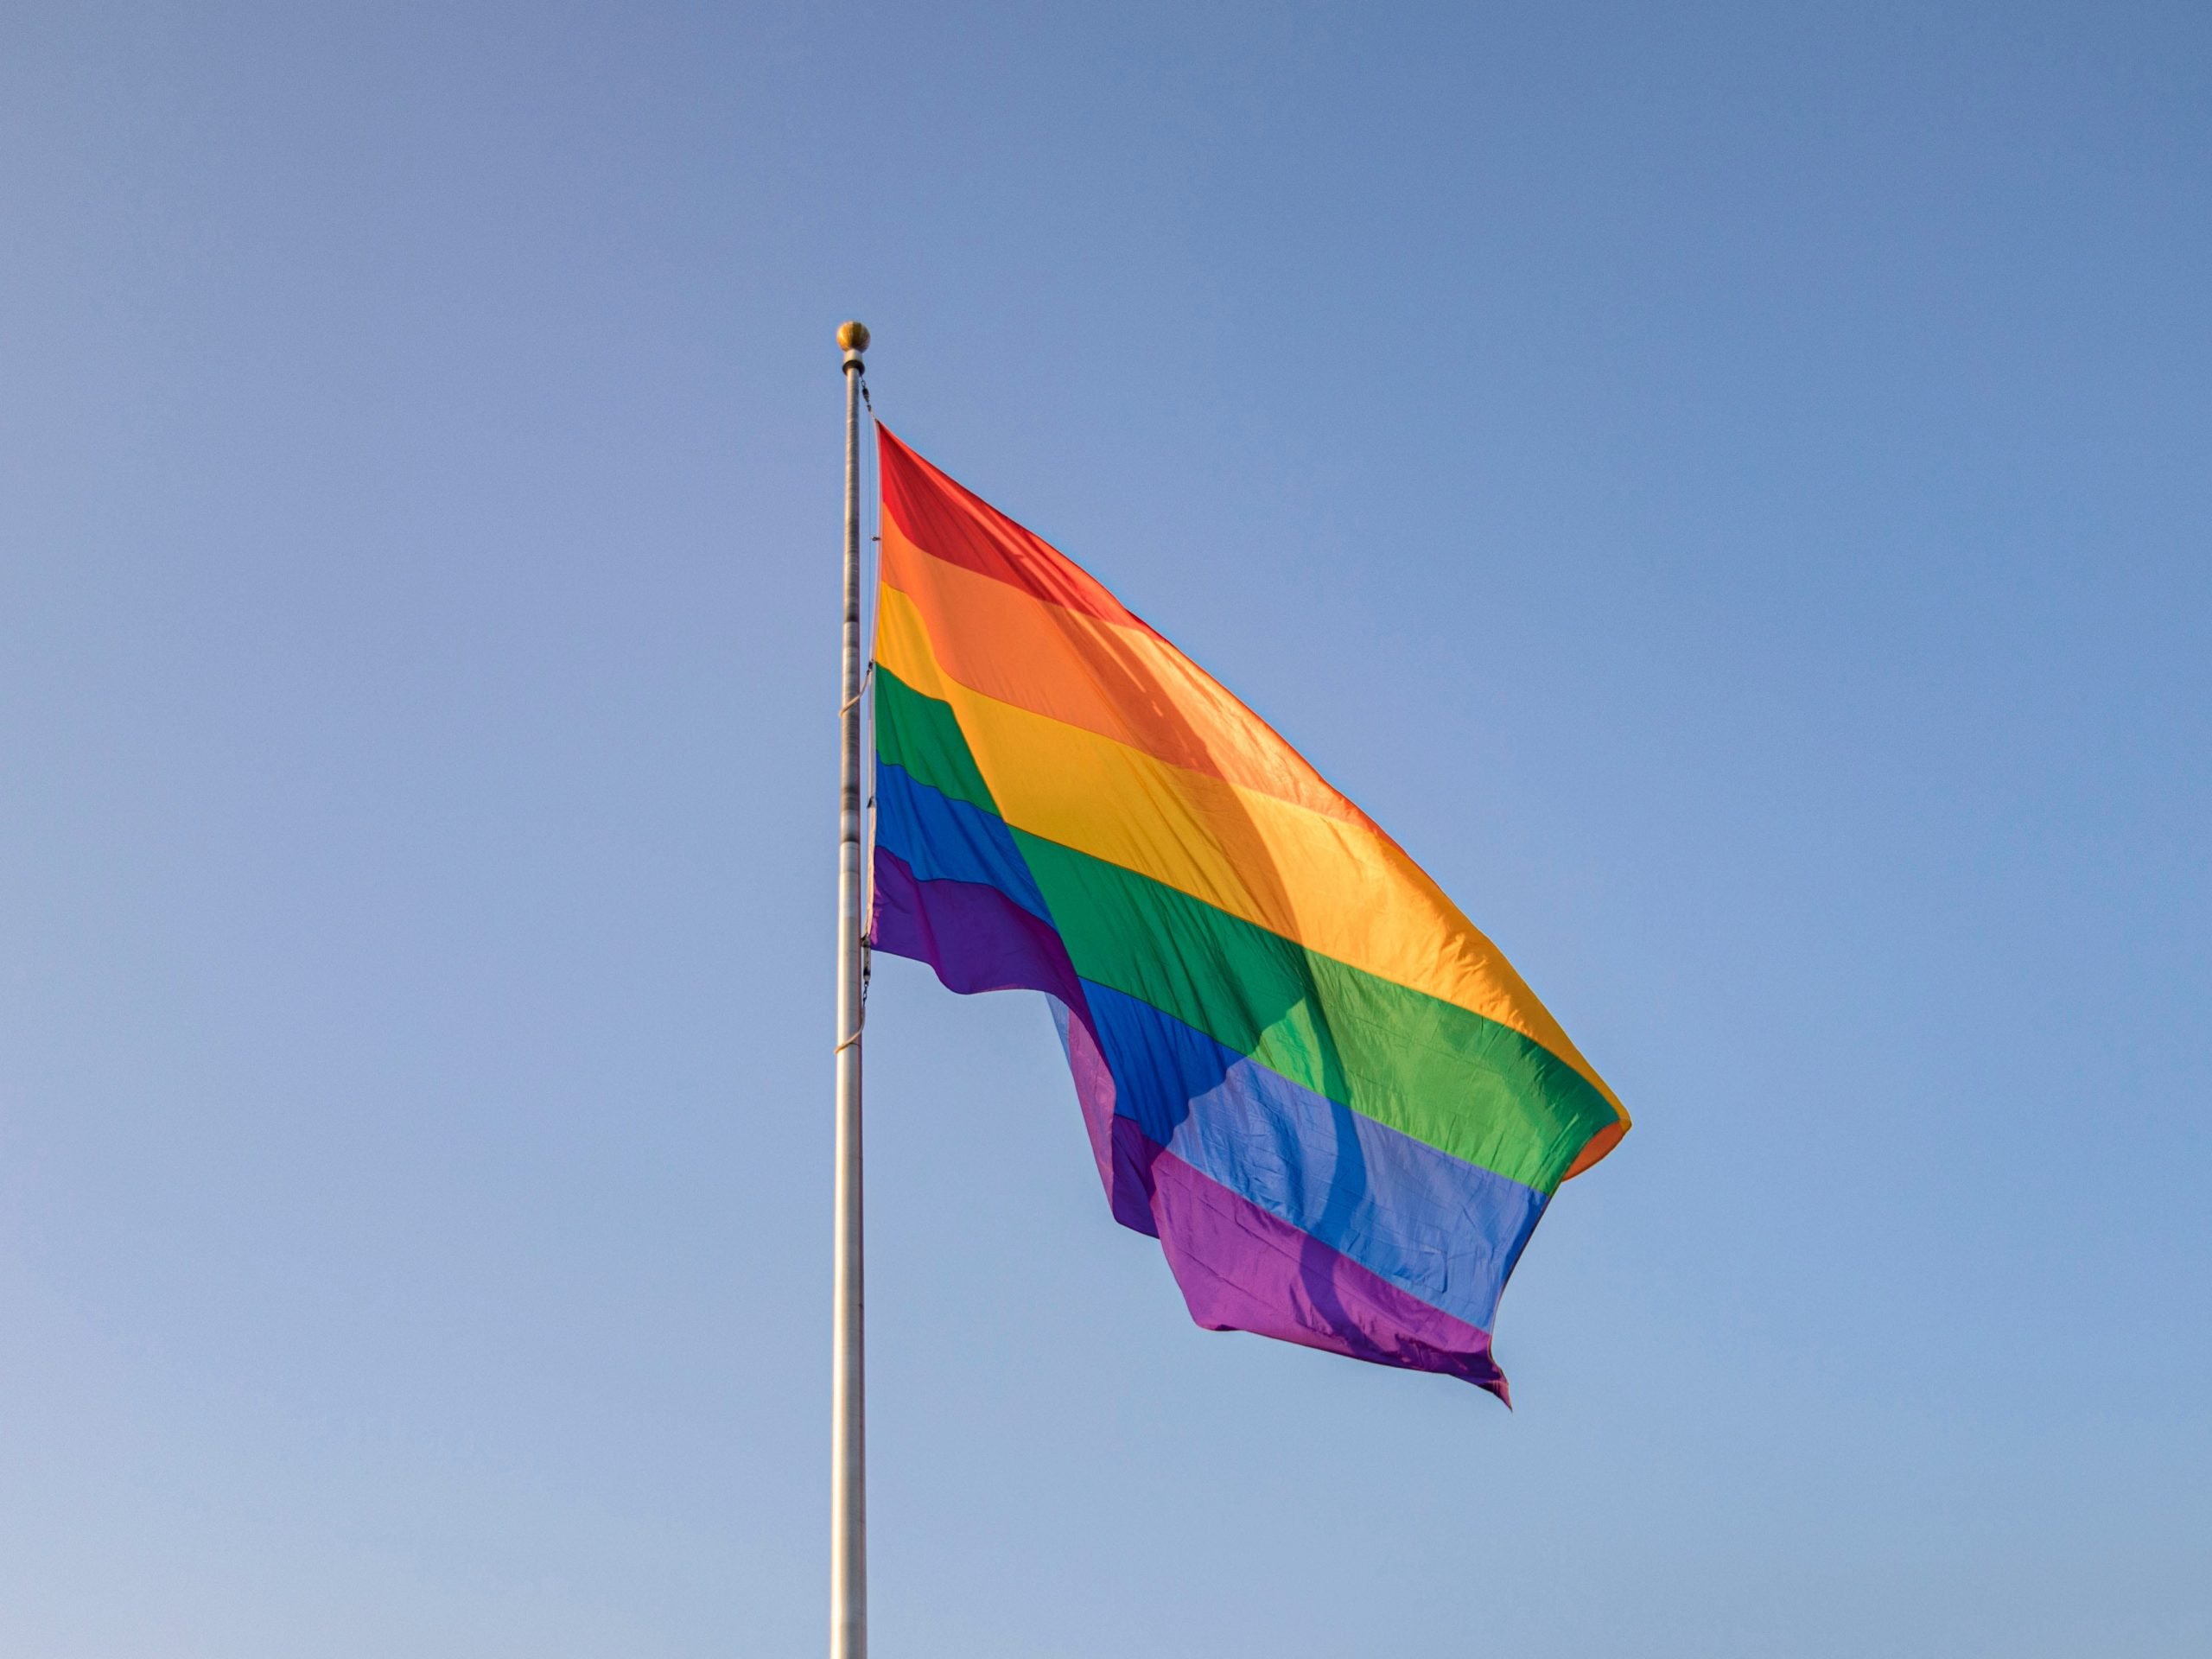 The LGBTQ pride flag.